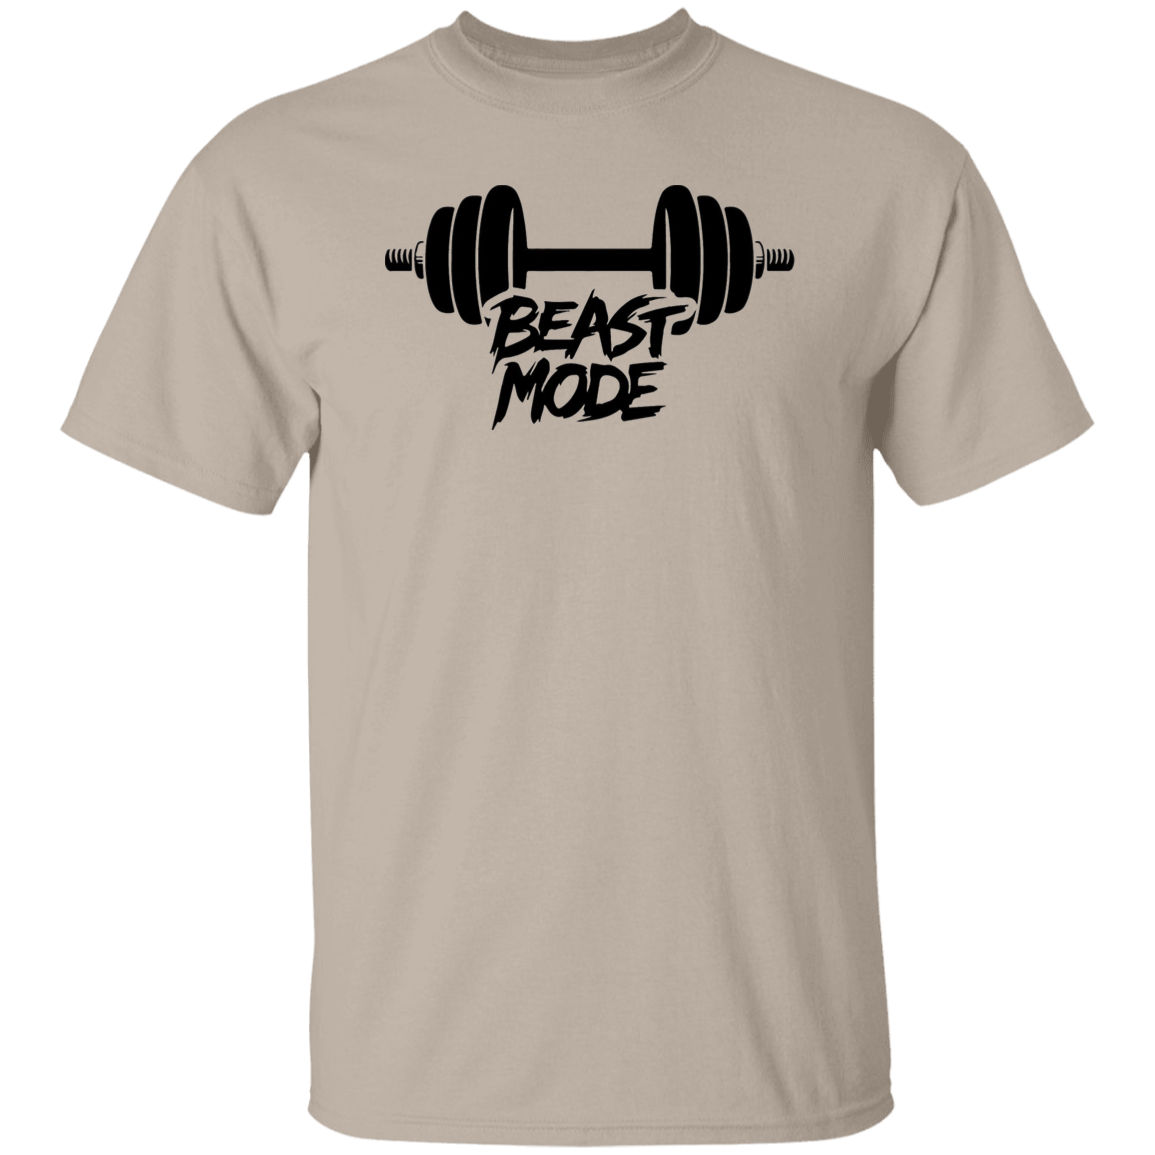 Beast Mode 5.3 oz. T-Shirt